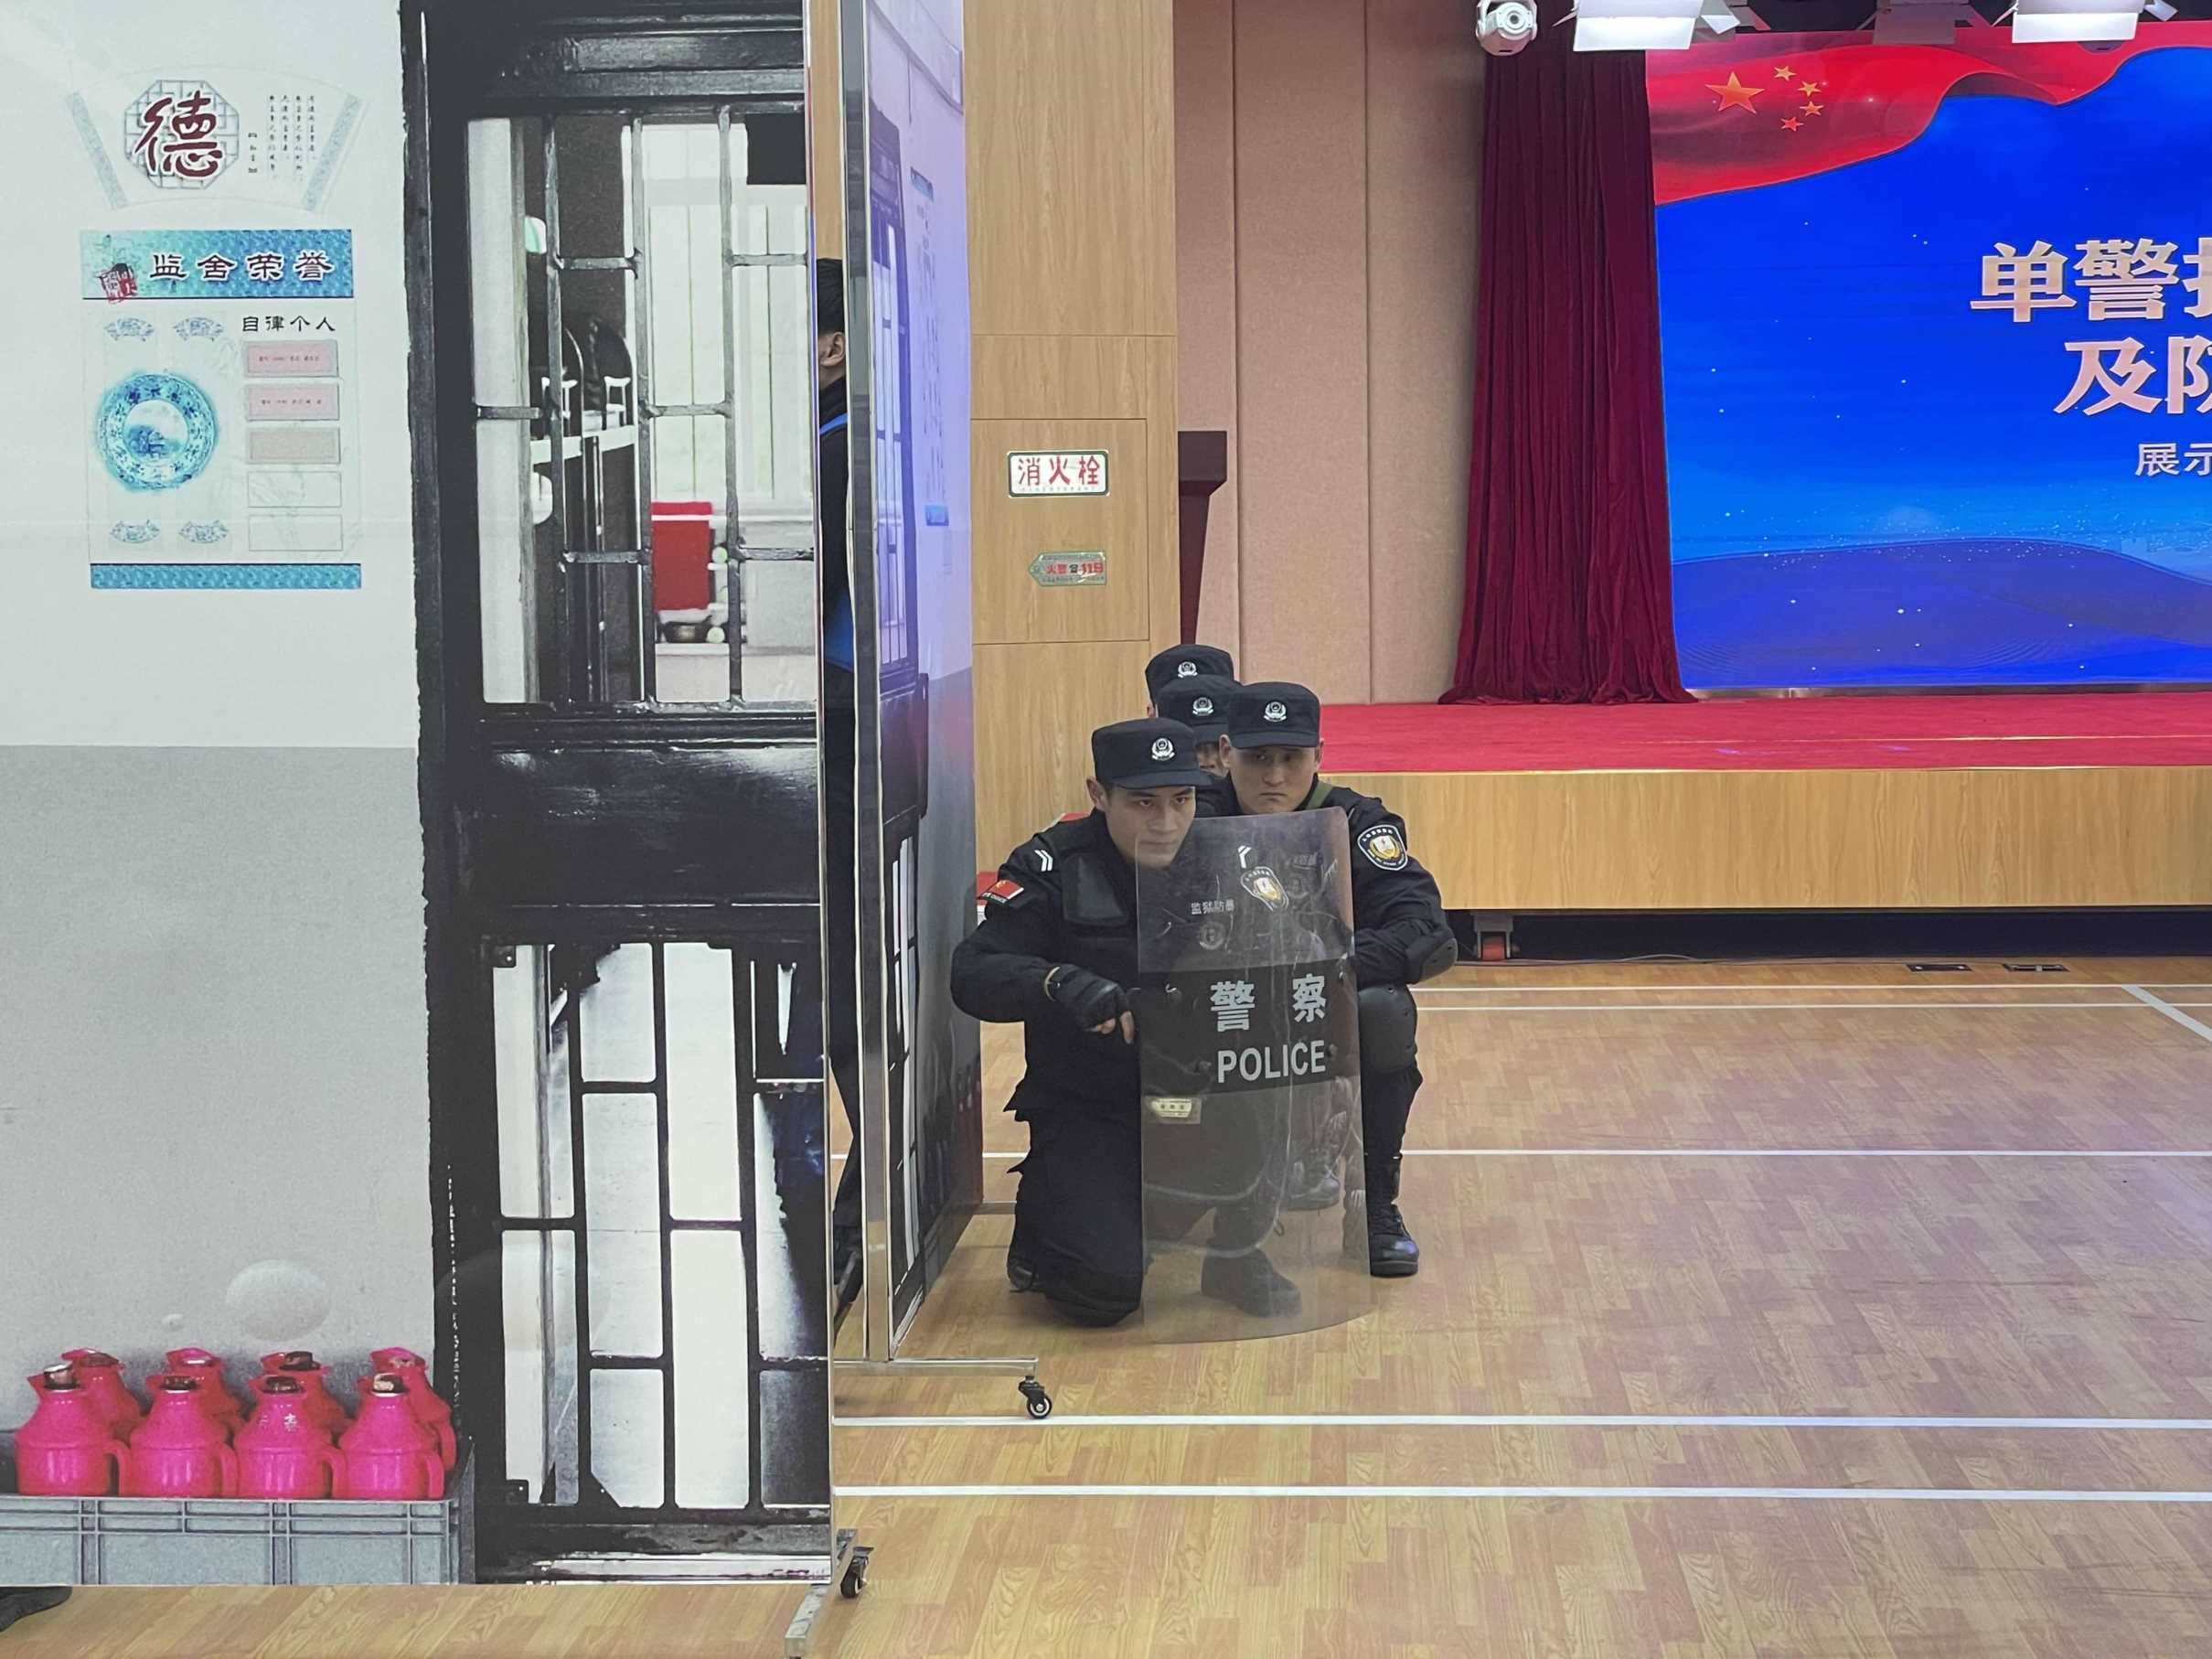 警棍盾牌术、辨影识人……上海司法行政系统民警现场“炫技”